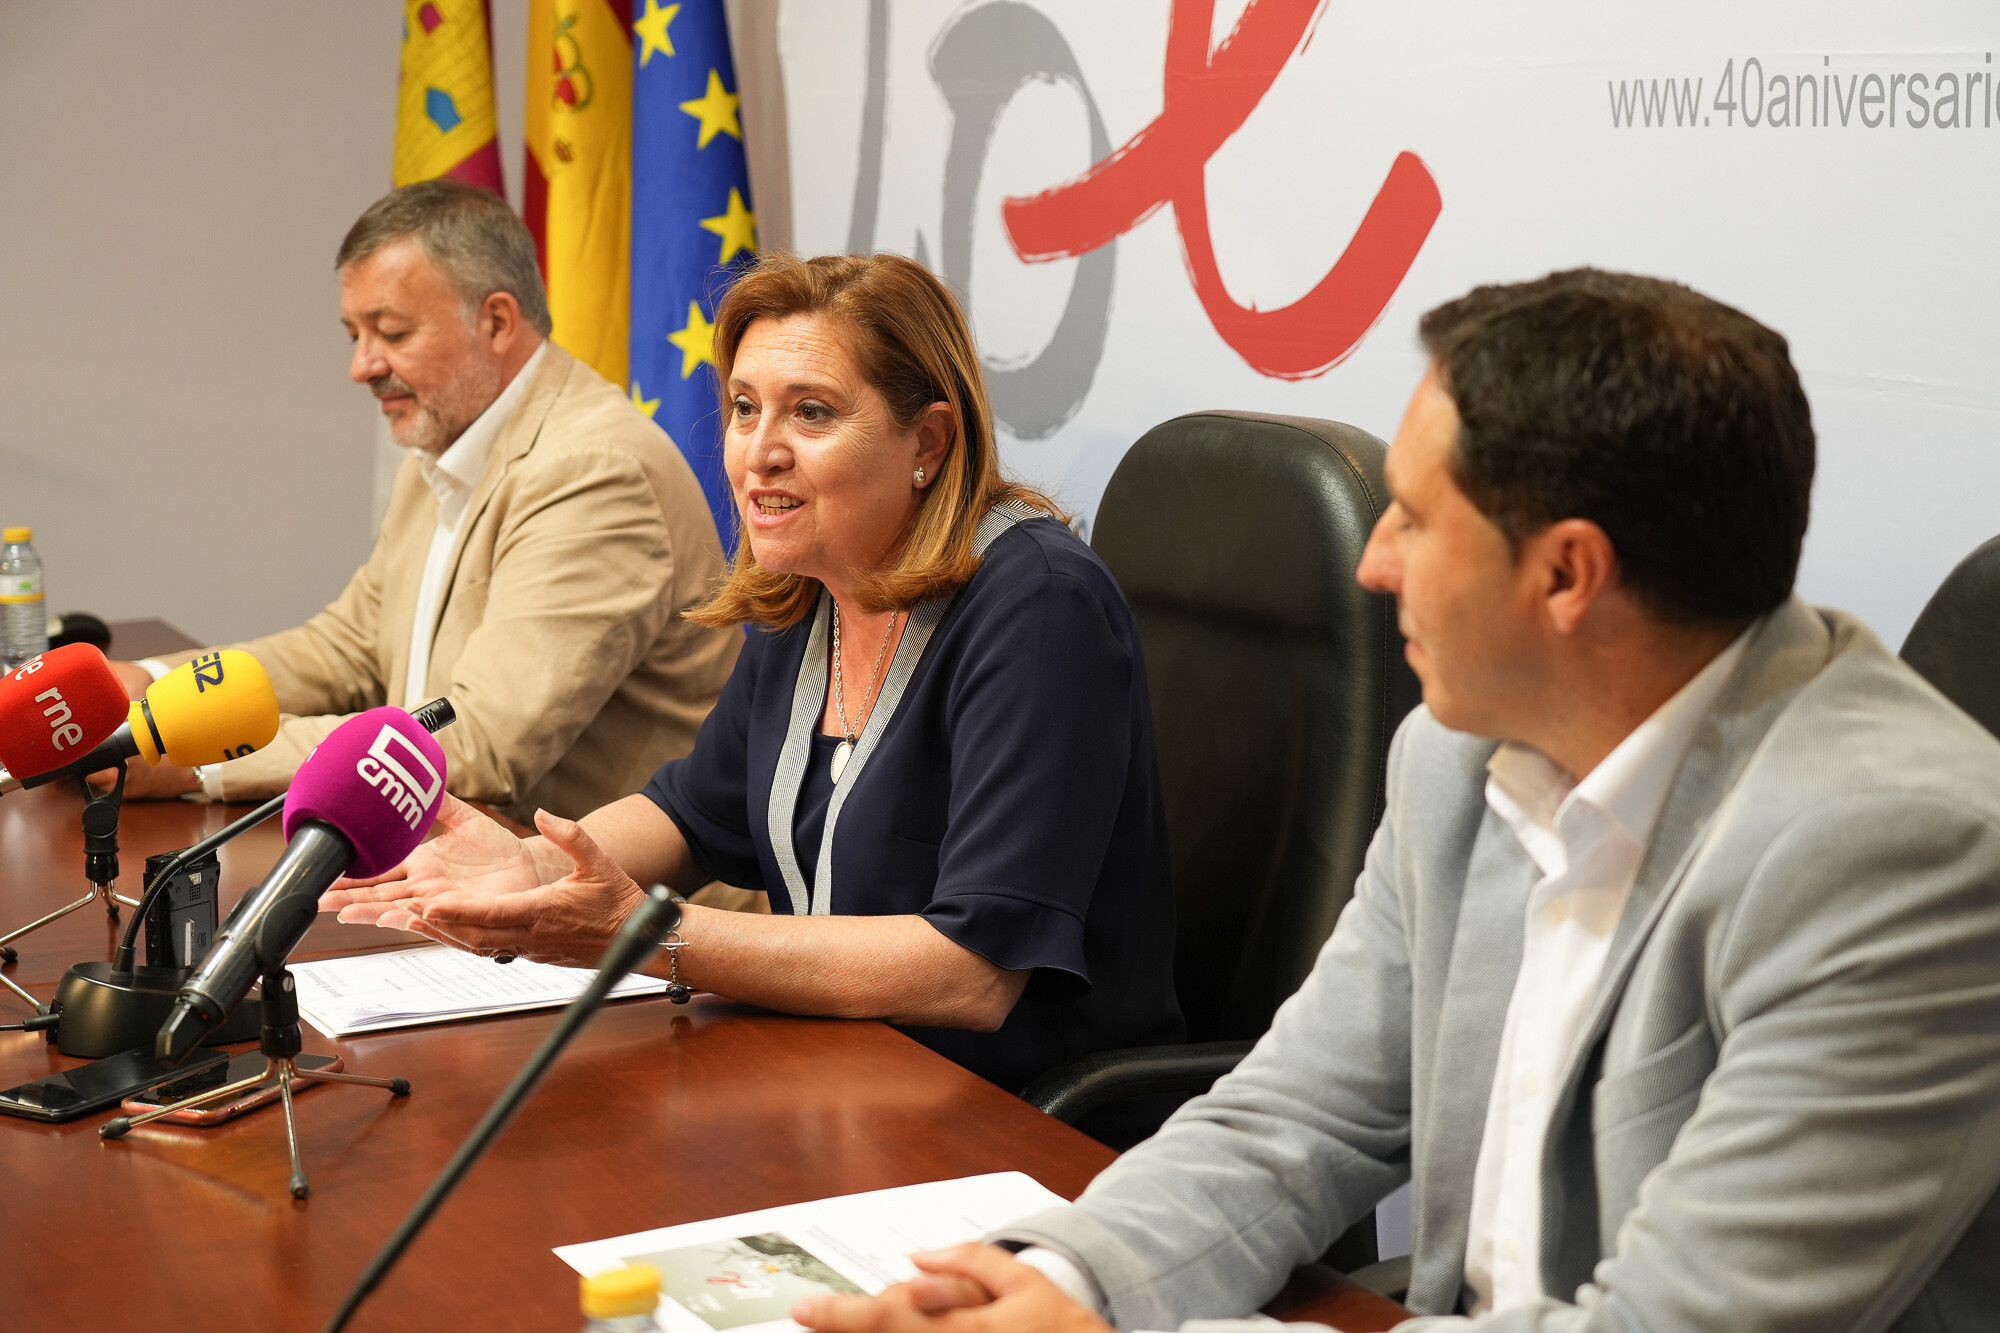 La provincia de Cuenca acogerá 60 actividades para celebrar el 40 aniversario del Estatuto